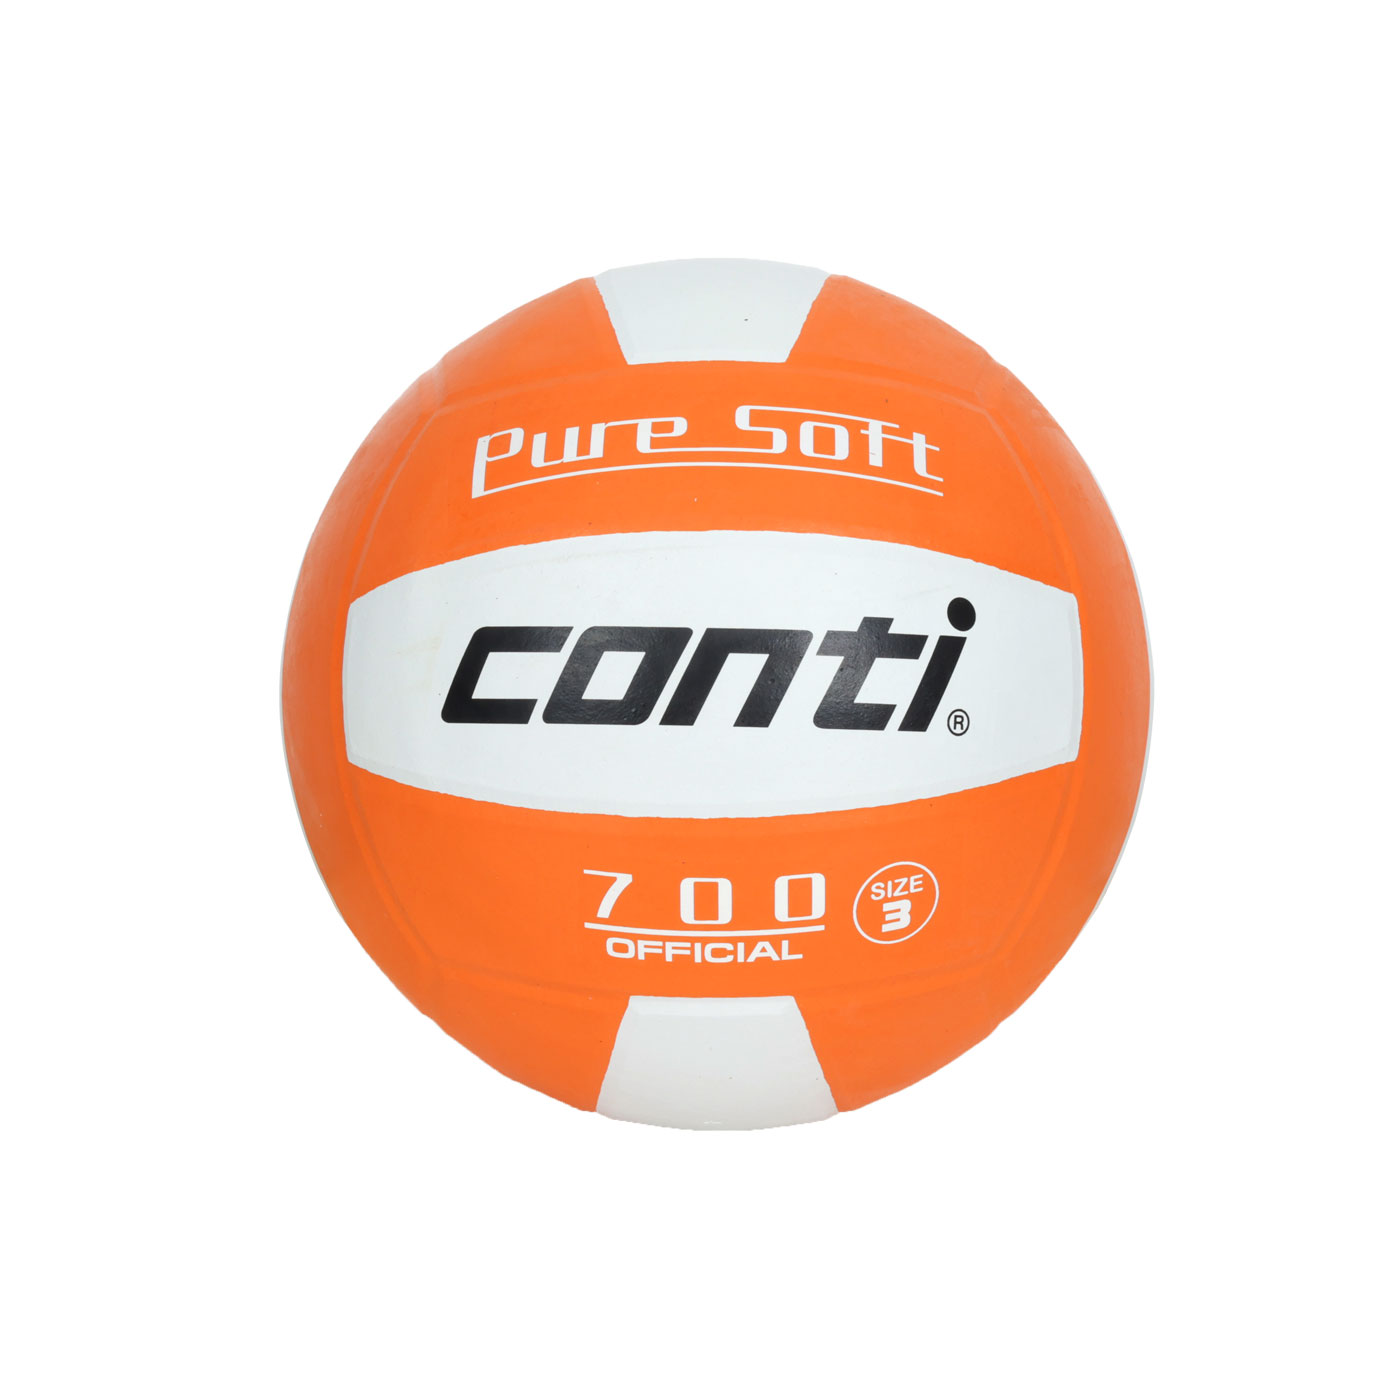 詠冠conti 3號超軟橡膠排球-雙色系列 CONTI V700-3-W0 - 橘白